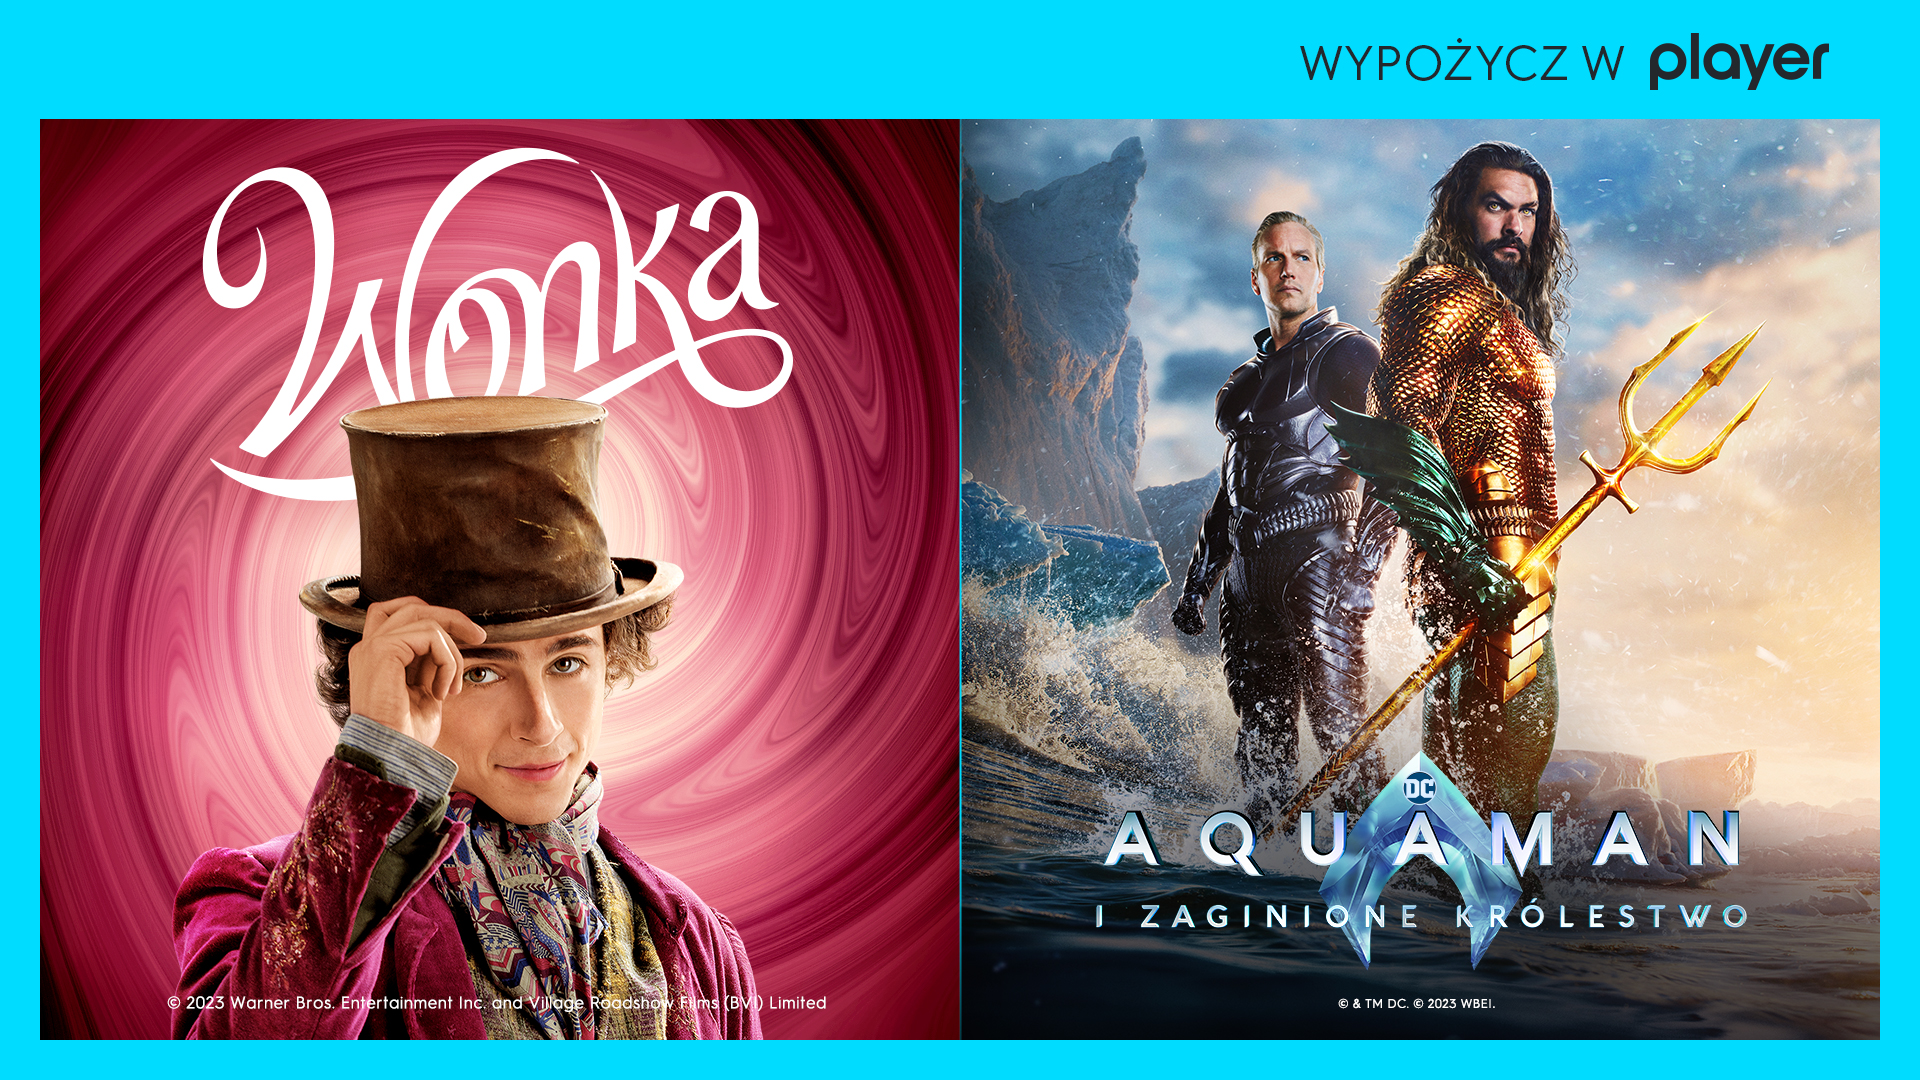 Filmy “Wonka” i “Aquaman: Zaginione Królestwo” dodane do biblioteki VoD w Player! Jak oglądać?